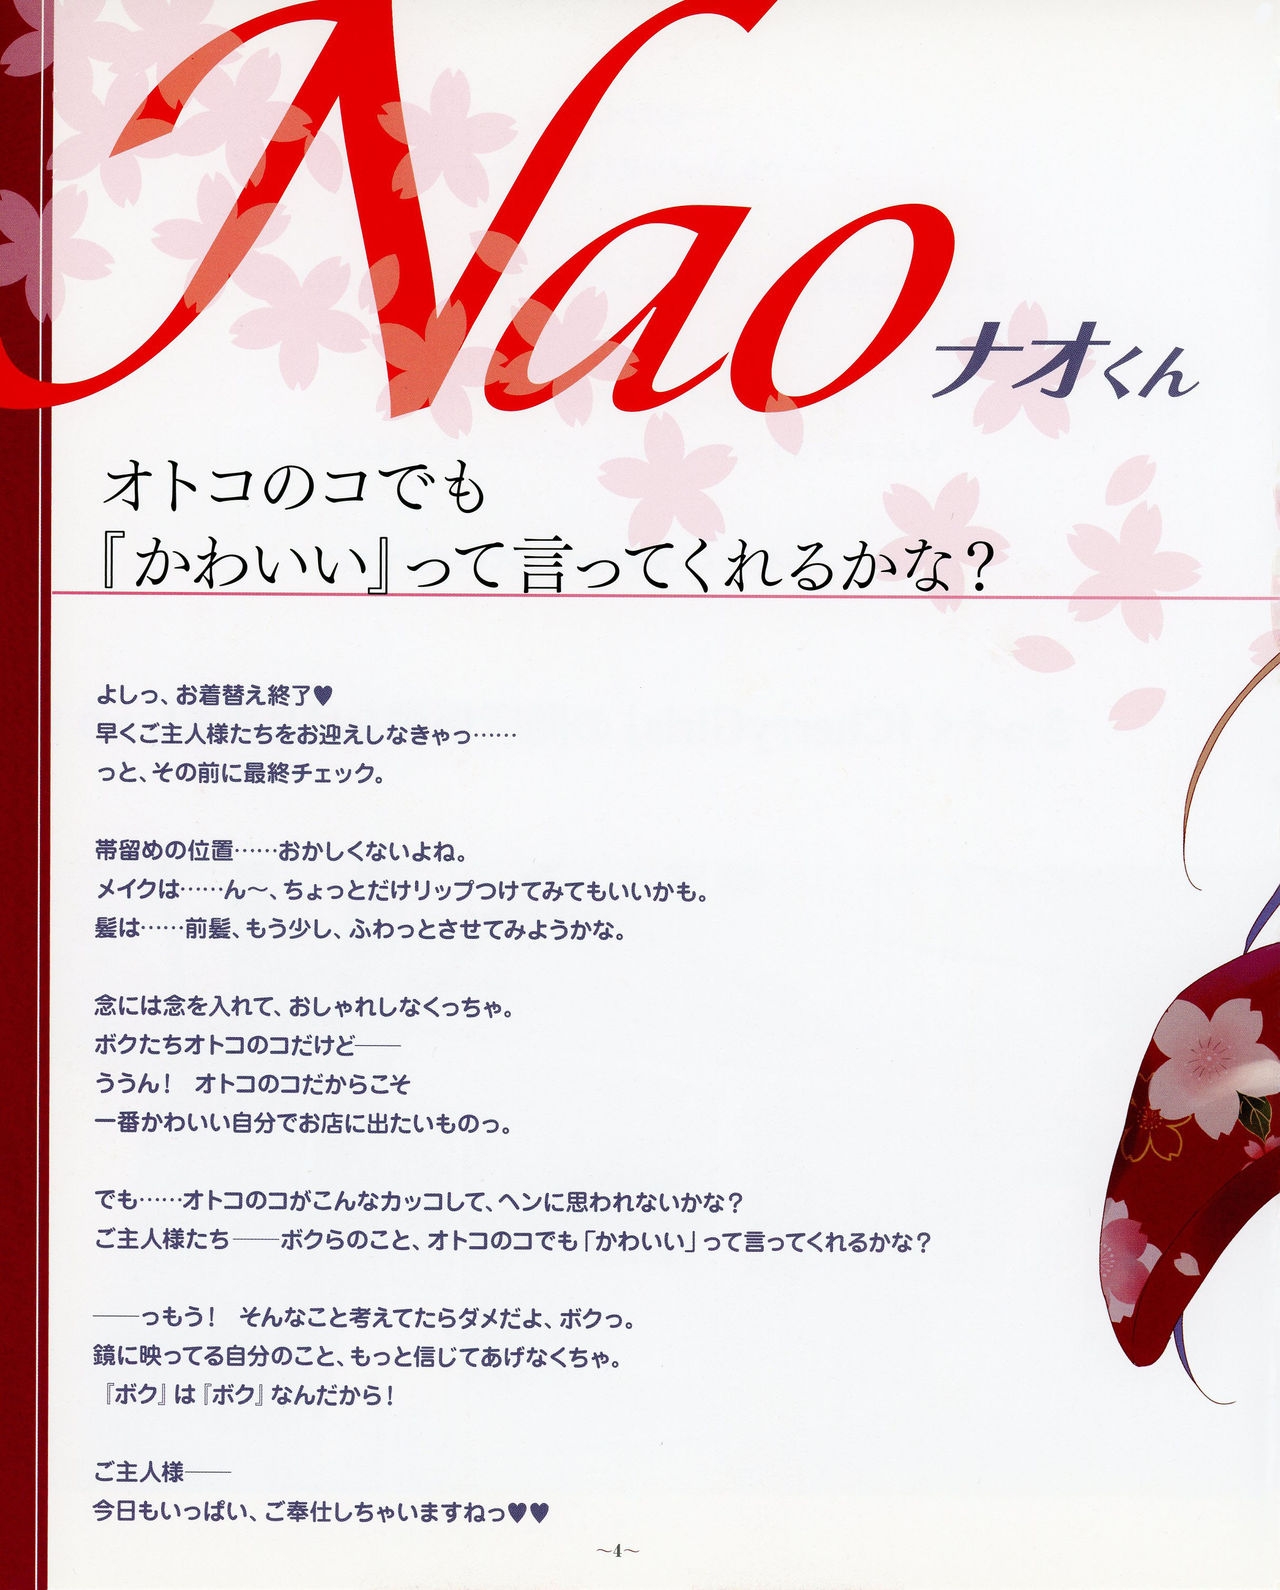 [Kasukabe Akira] Otokonoko wa Maid Fuku ga Osuki!? visual book vol. 1 (Otokonoko wa Maid Fuku ga Osuki!?) 6